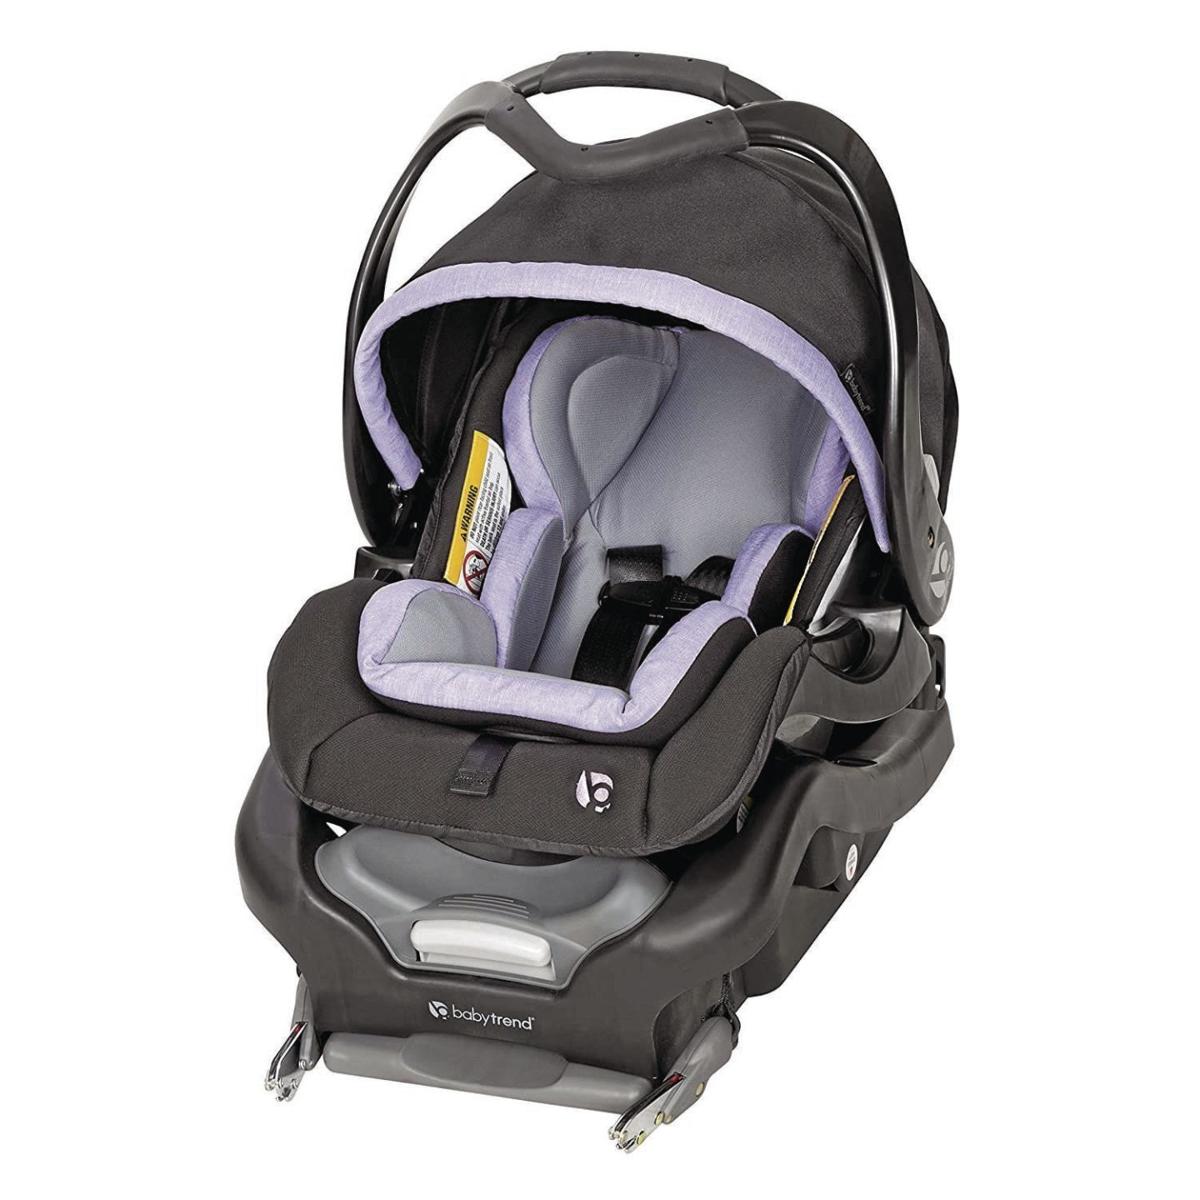 Safest infant car seats | Parenting | scnow.com